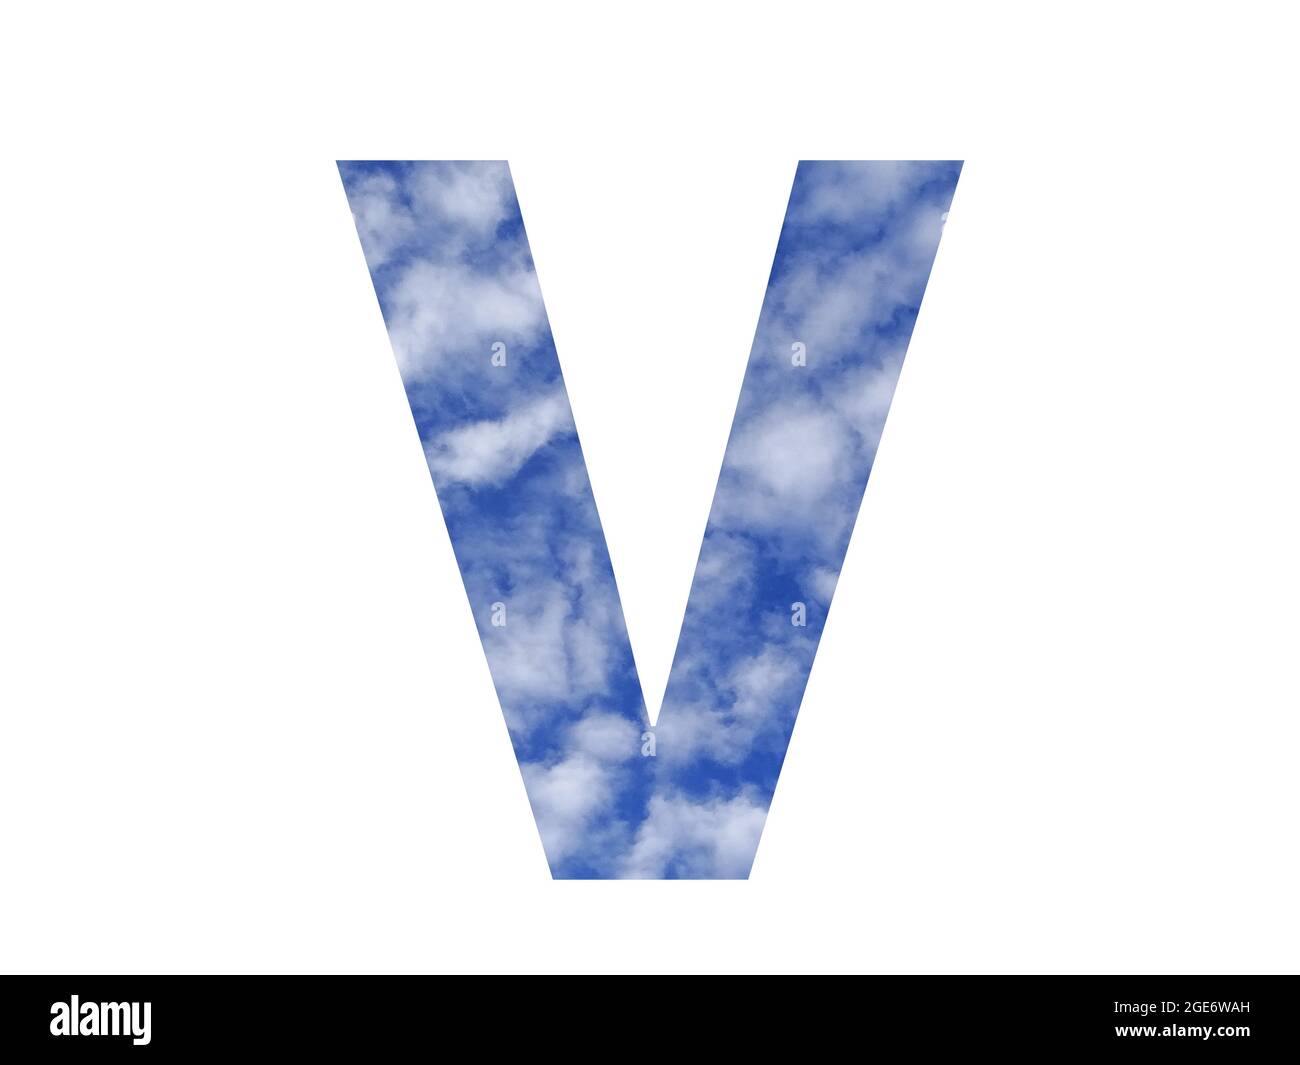 Lettera V dell'alfabeto fatta con cielo blu e nuvole bianche, isolata su sfondo bianco Foto Stock